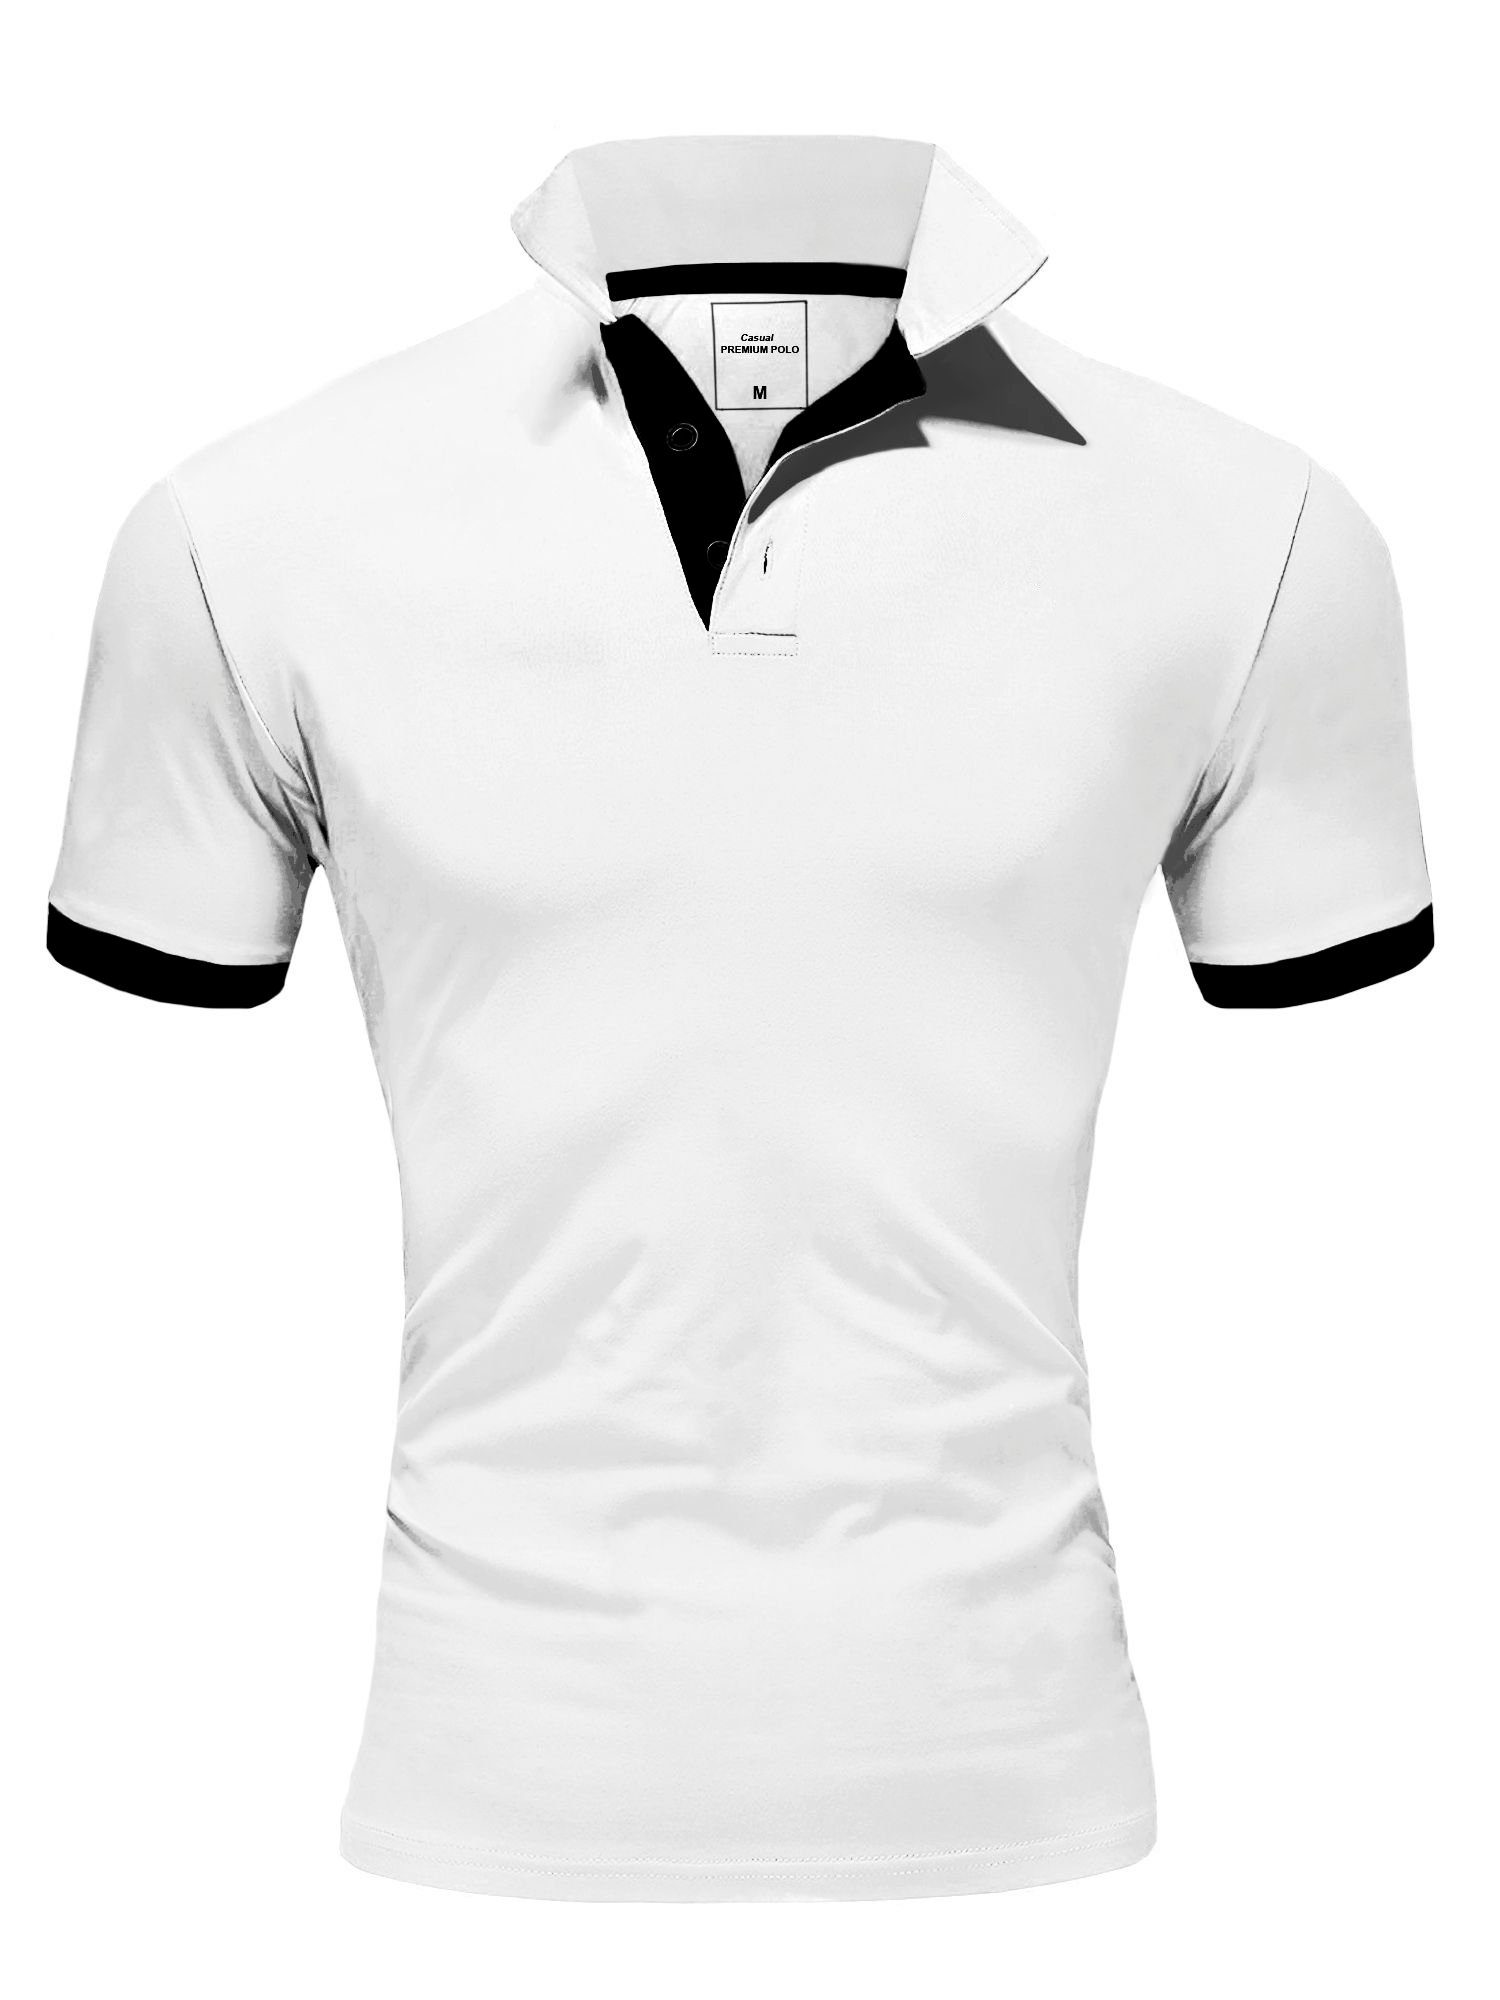 Details kontrastfarbigen mit behype Poloshirt BASE weiß-schwarz